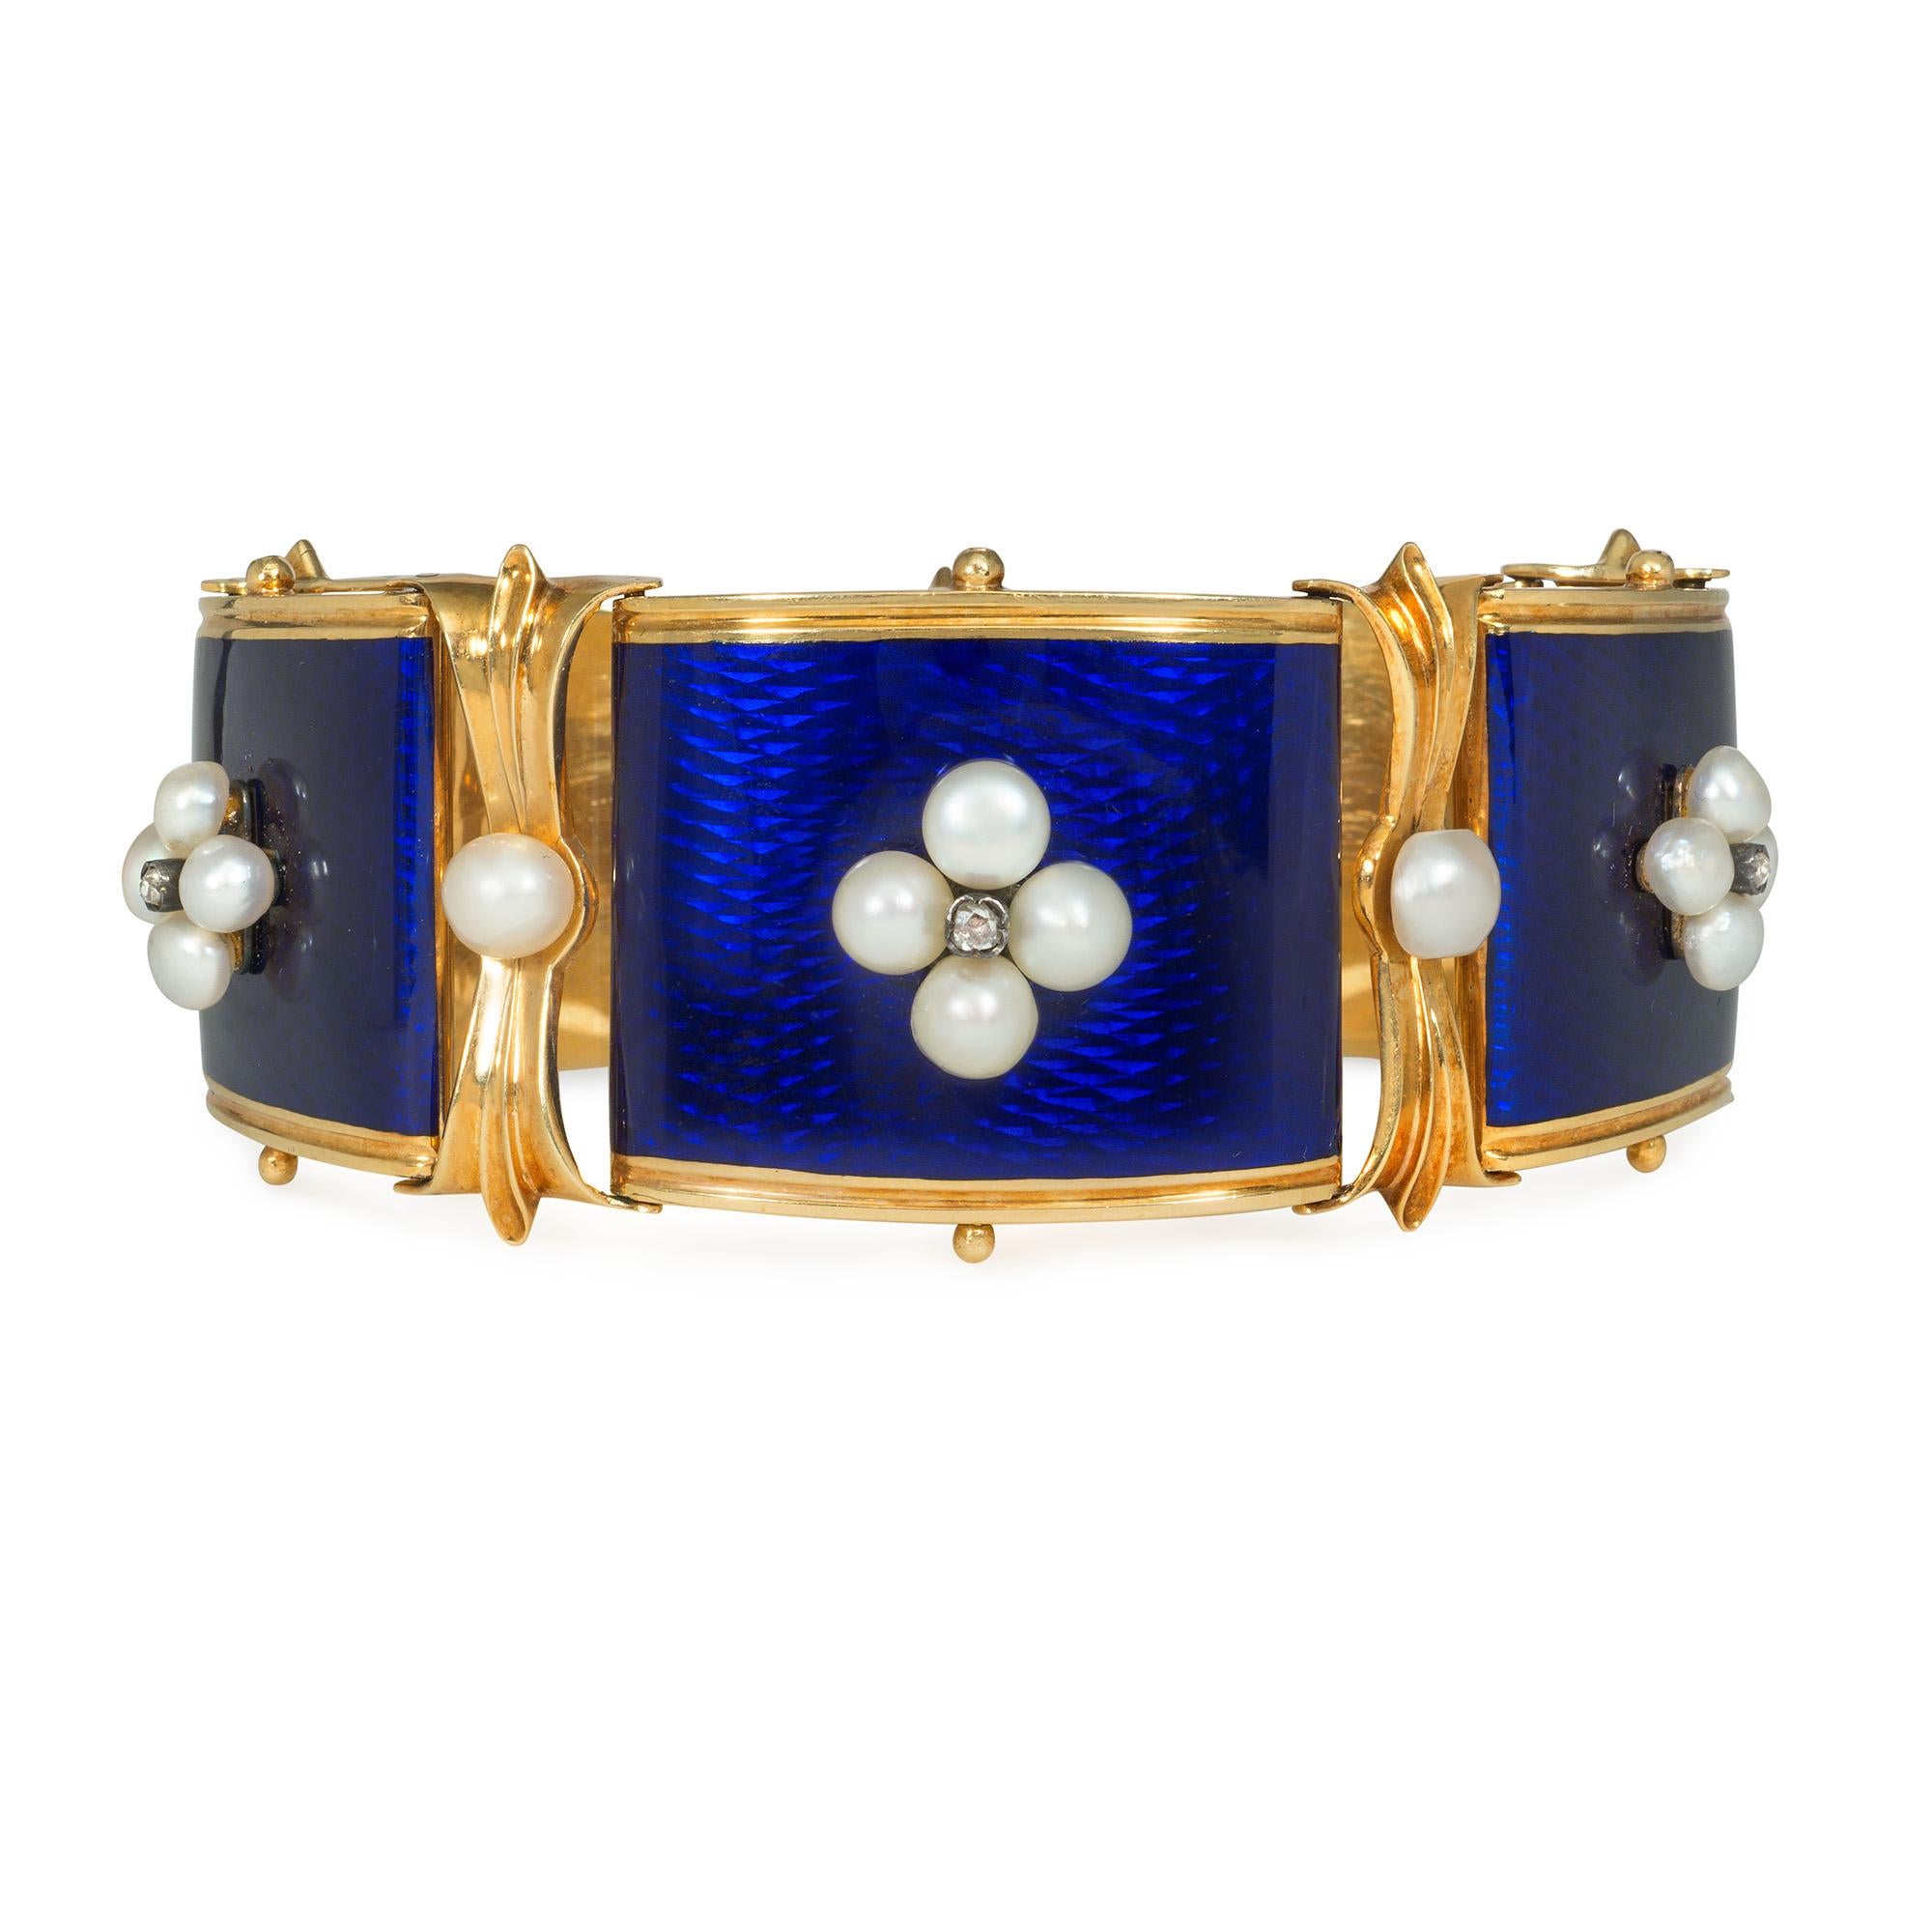 Ein antikes viktorianisches Gold-, Emaille-, Perlen- und Diamantarmband, bestehend aus fünf spitz zulaufenden blauen Emailleplättchen, die mit vierblättrigen Perlen- und rosafarbenen Diamantelementen besetzt sind, mit Blattwerkmotiv und